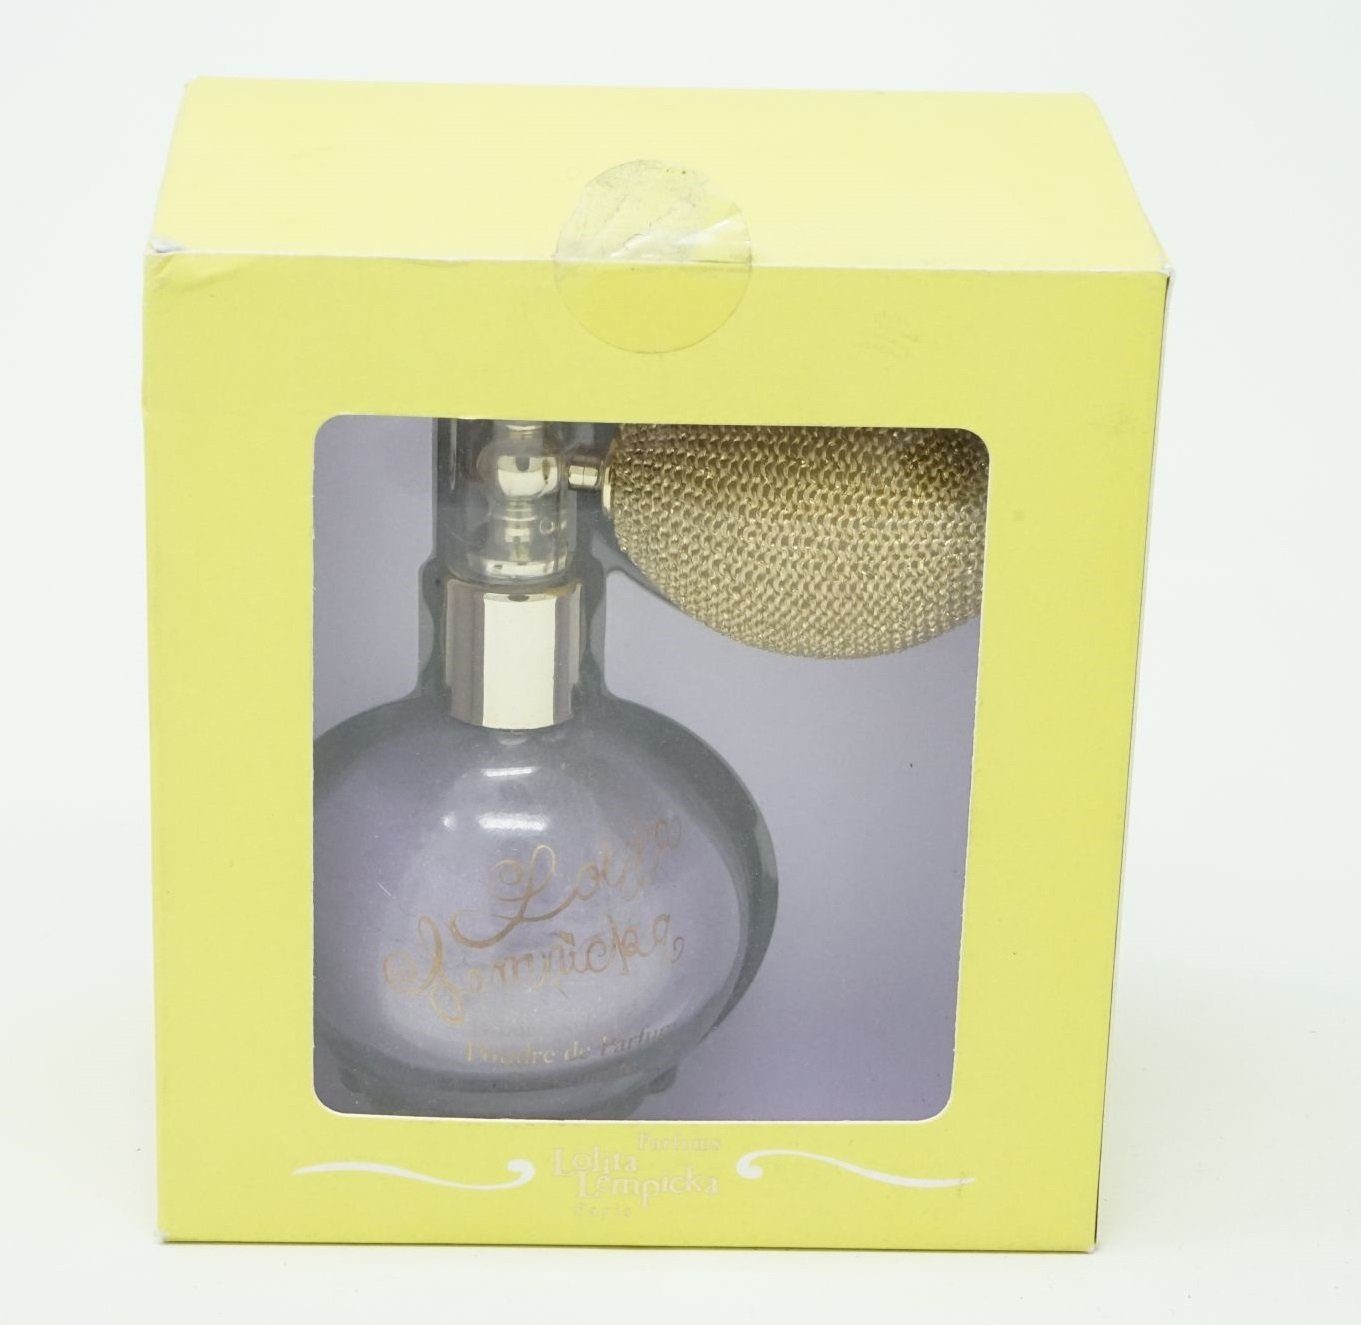 Lolita Öl-Parfüm Lempicka Powdered Shimmering Lolita Lempicka Perfume 17,2g